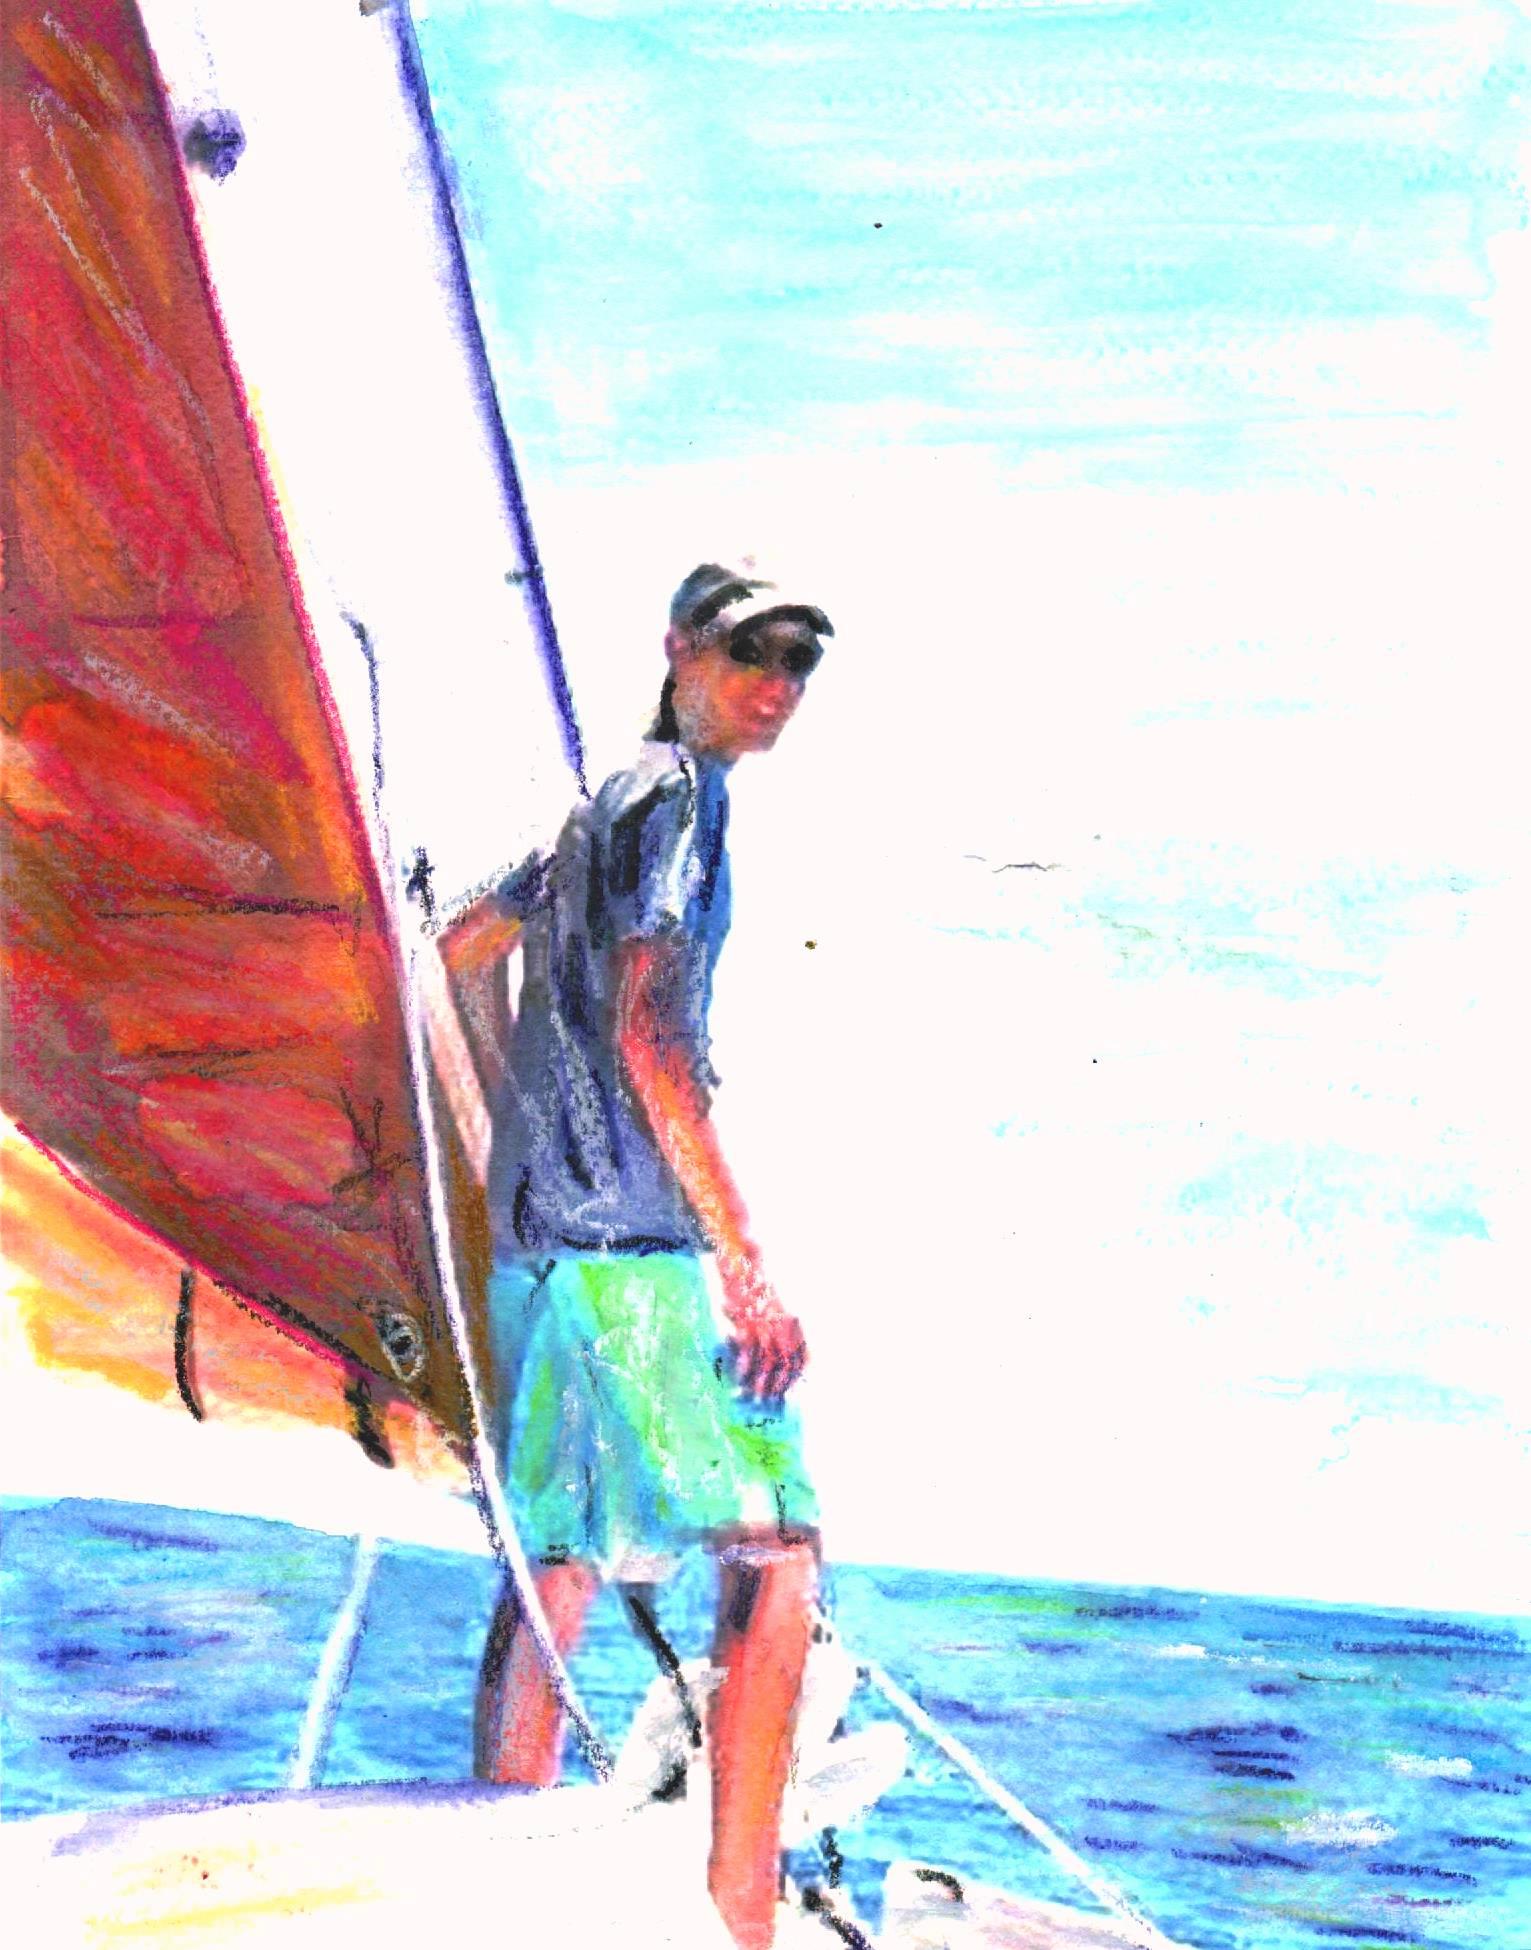 Brendan_sailing in Bermuda